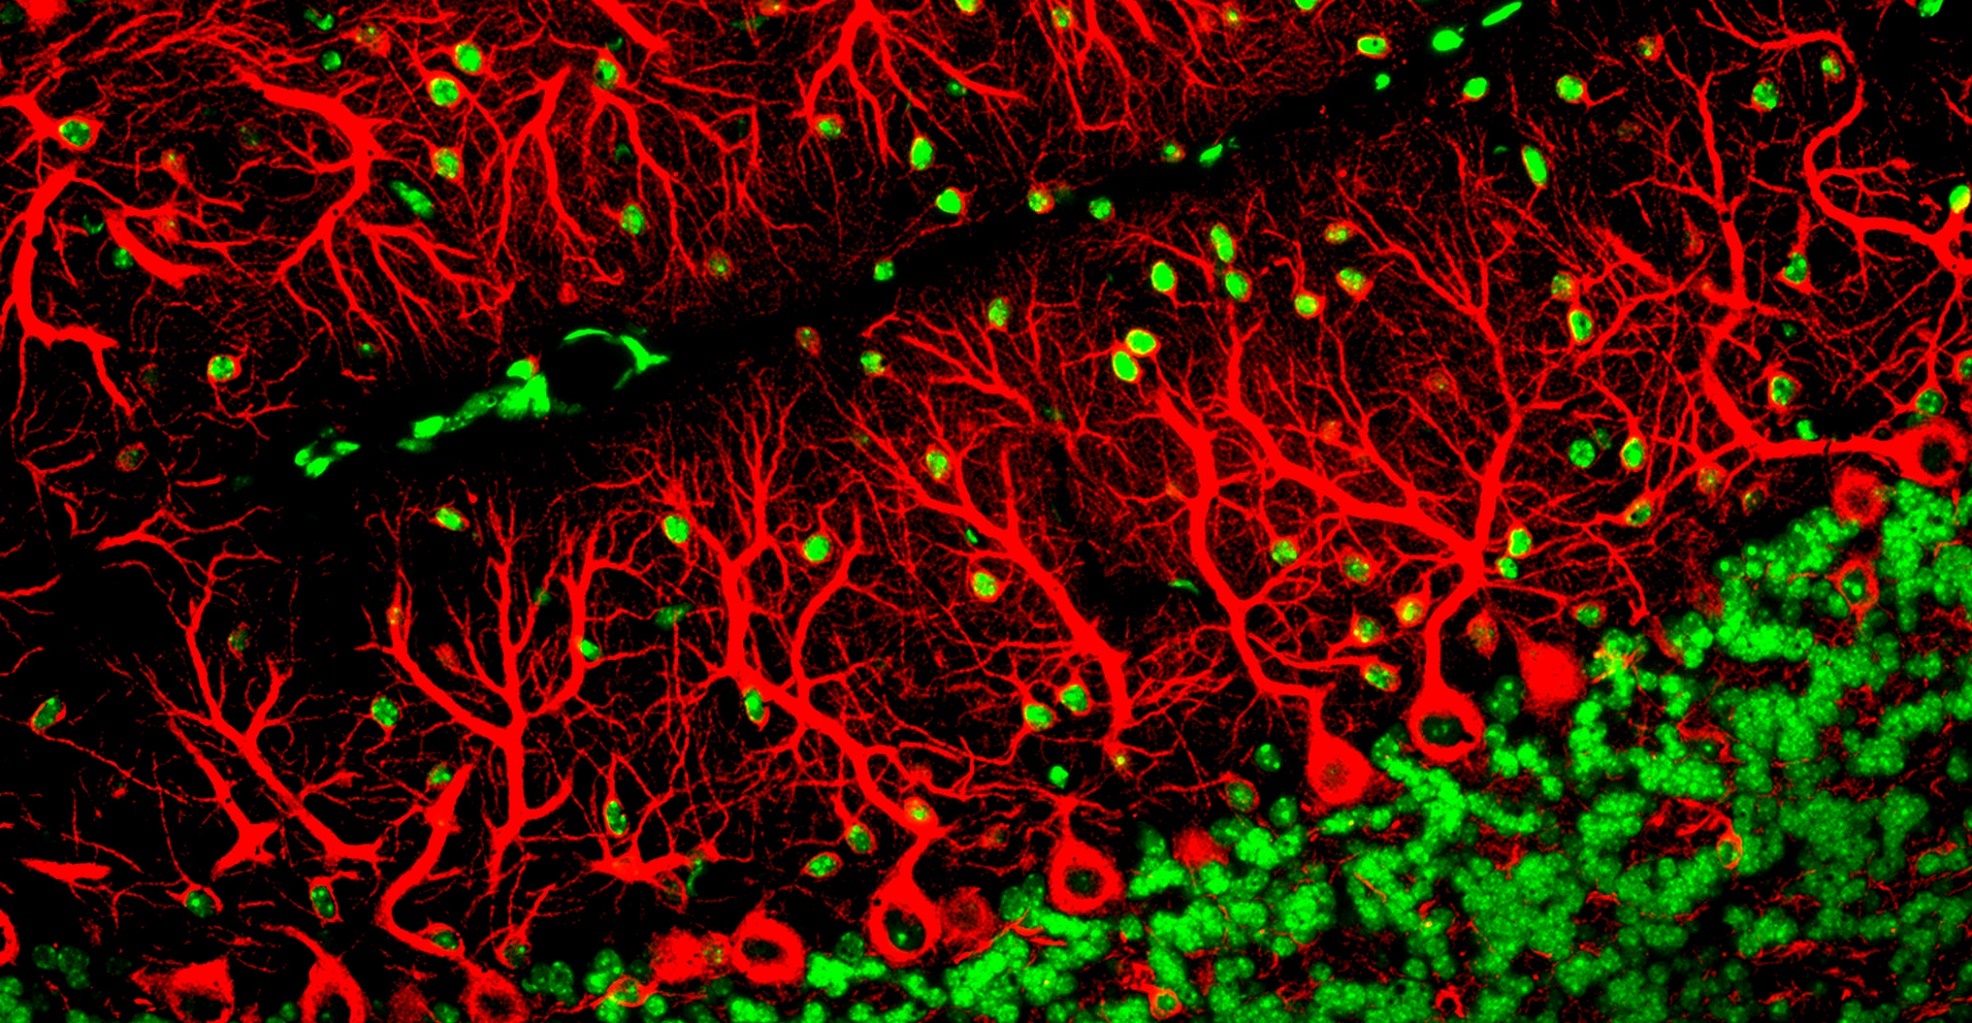 Les cellules de Purkinje (en rouge) se caractérisent par un arbre dendritique bien ramifié. © ZEISS Microscopy, Flickr, CC BY-NC-ND 2.0